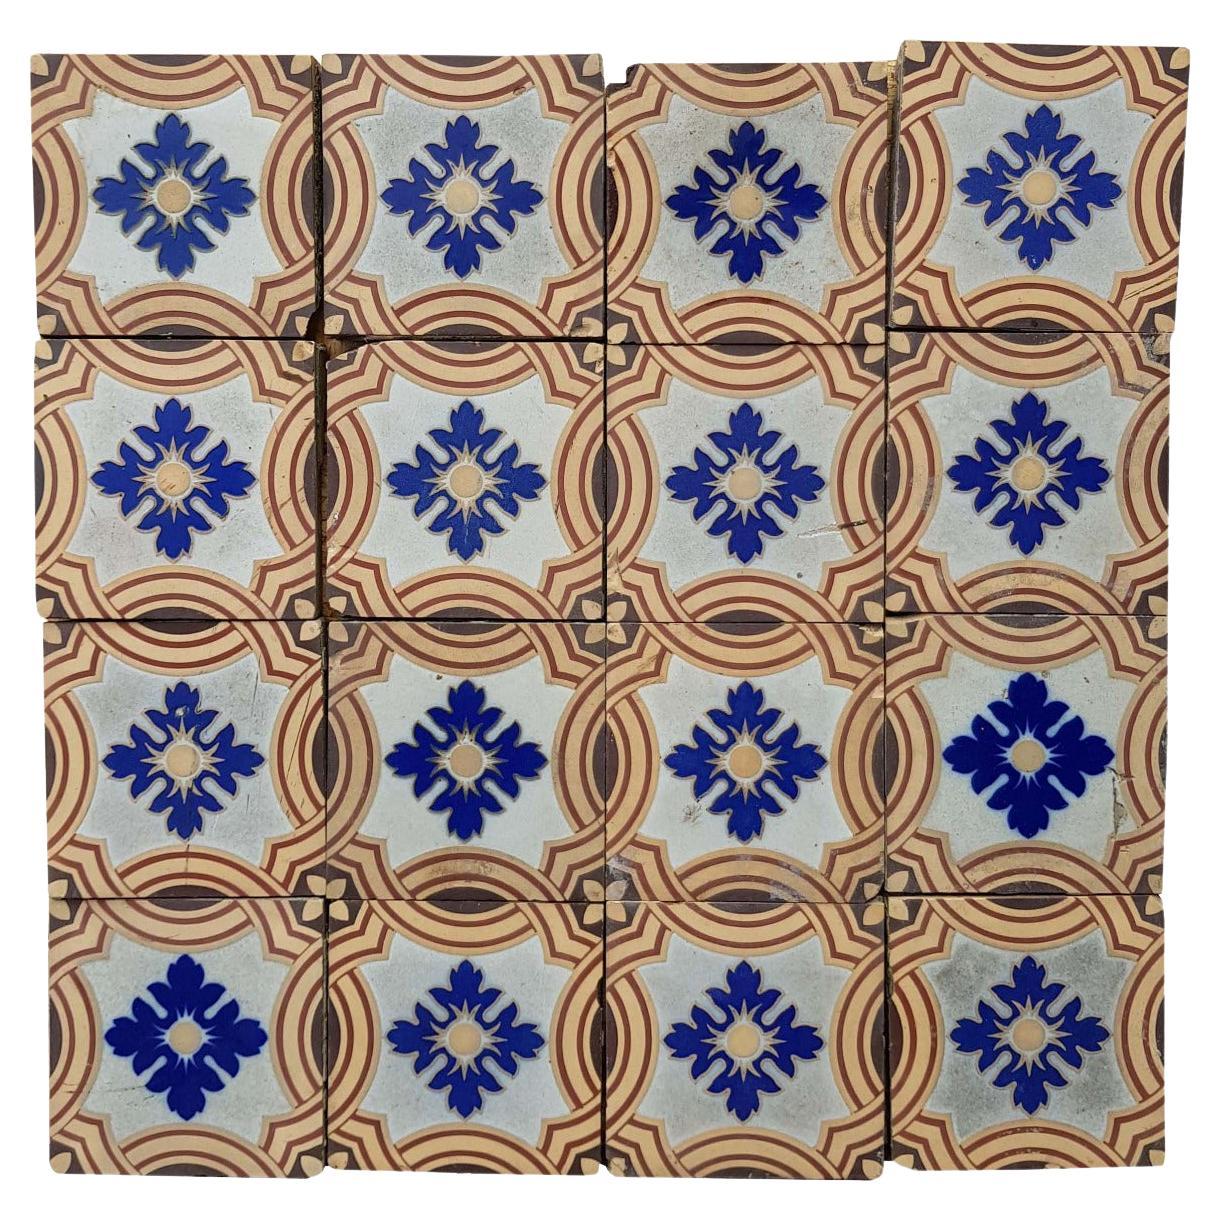 30 x Minton & Co. Encaustic Patterned Floor Tiles For Sale